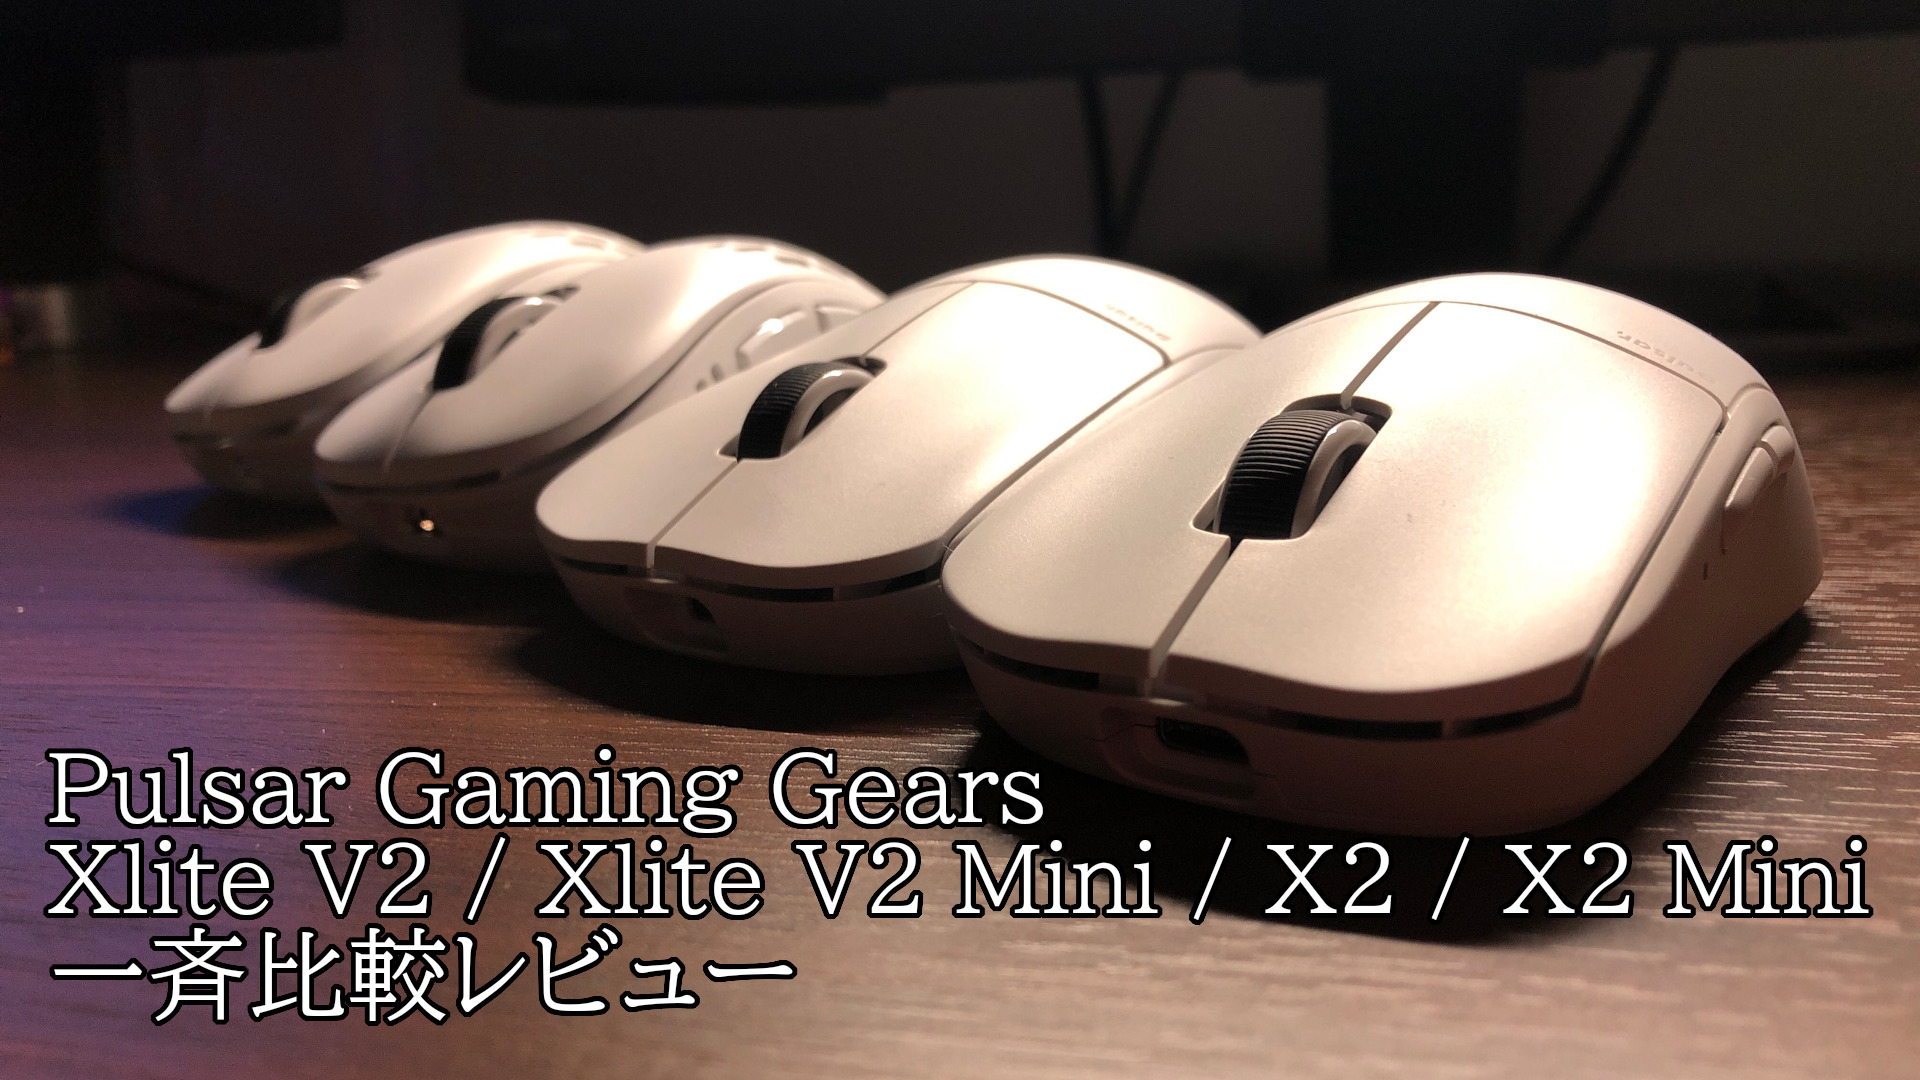 Pulsar Gaming Gearsゲーミングマウス「Xlite V2 Xlite V2 Mini X2 X2 Mini」を一斉比較レビュー